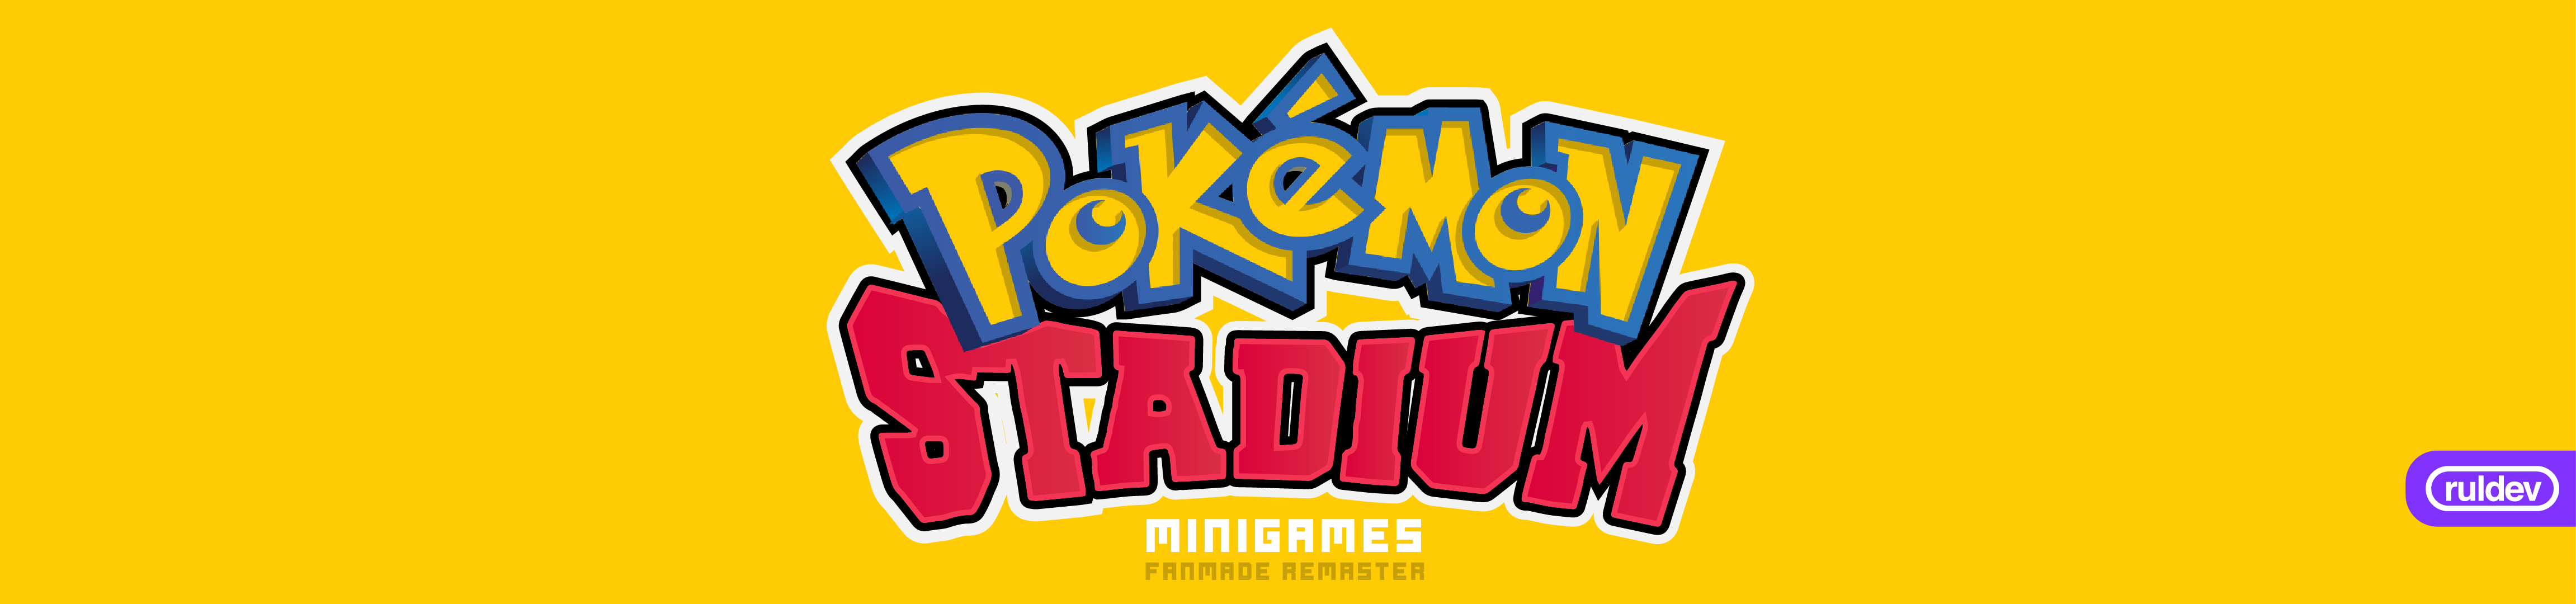 Pokemon Stadium Minigames